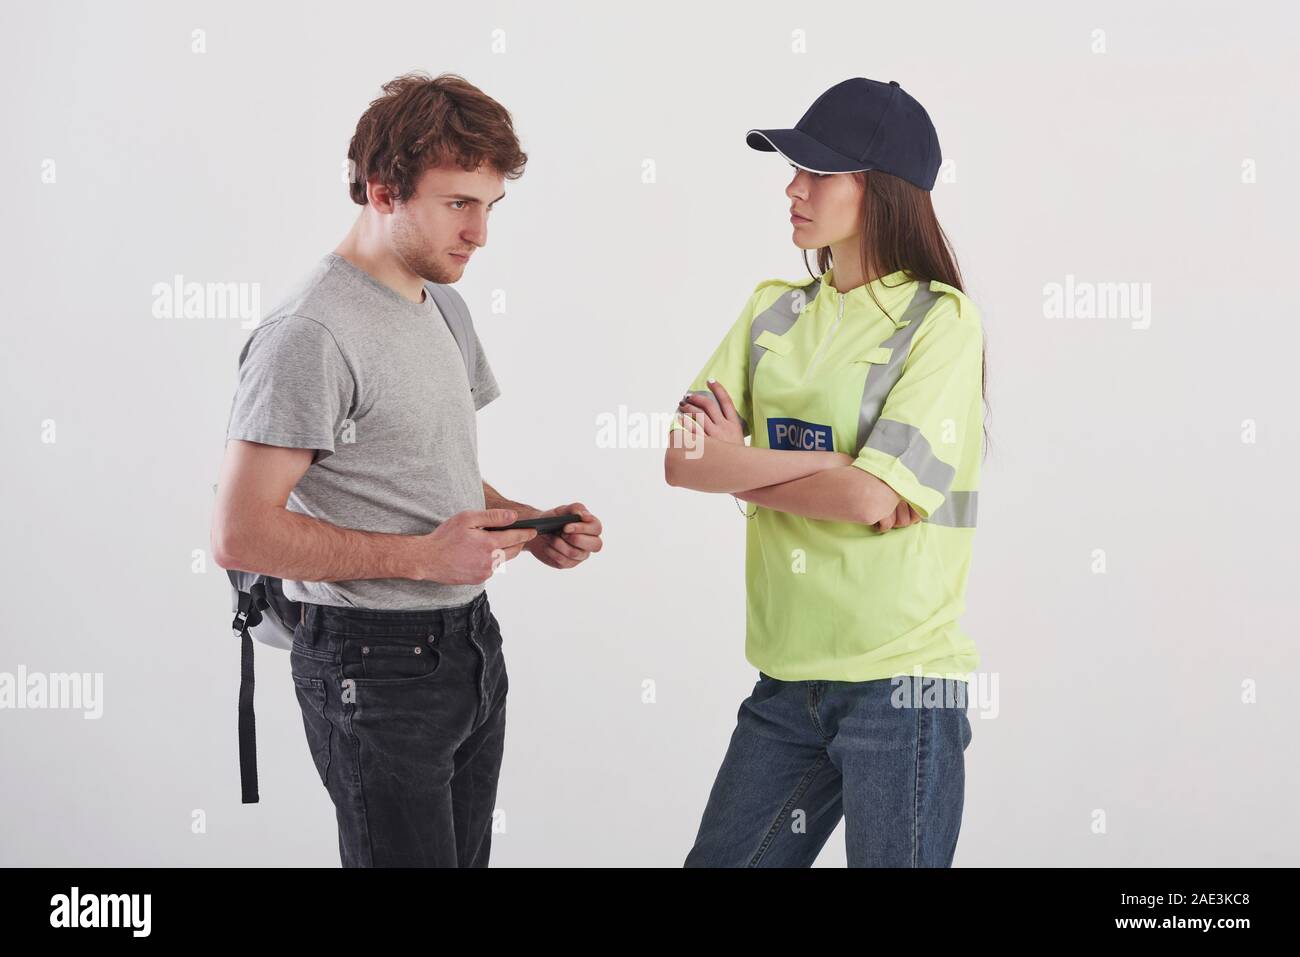 Deux personnes qui se parlaient. Pretty woman in police verte uniforme a Conversation with male student against white background dans le studio Banque D'Images